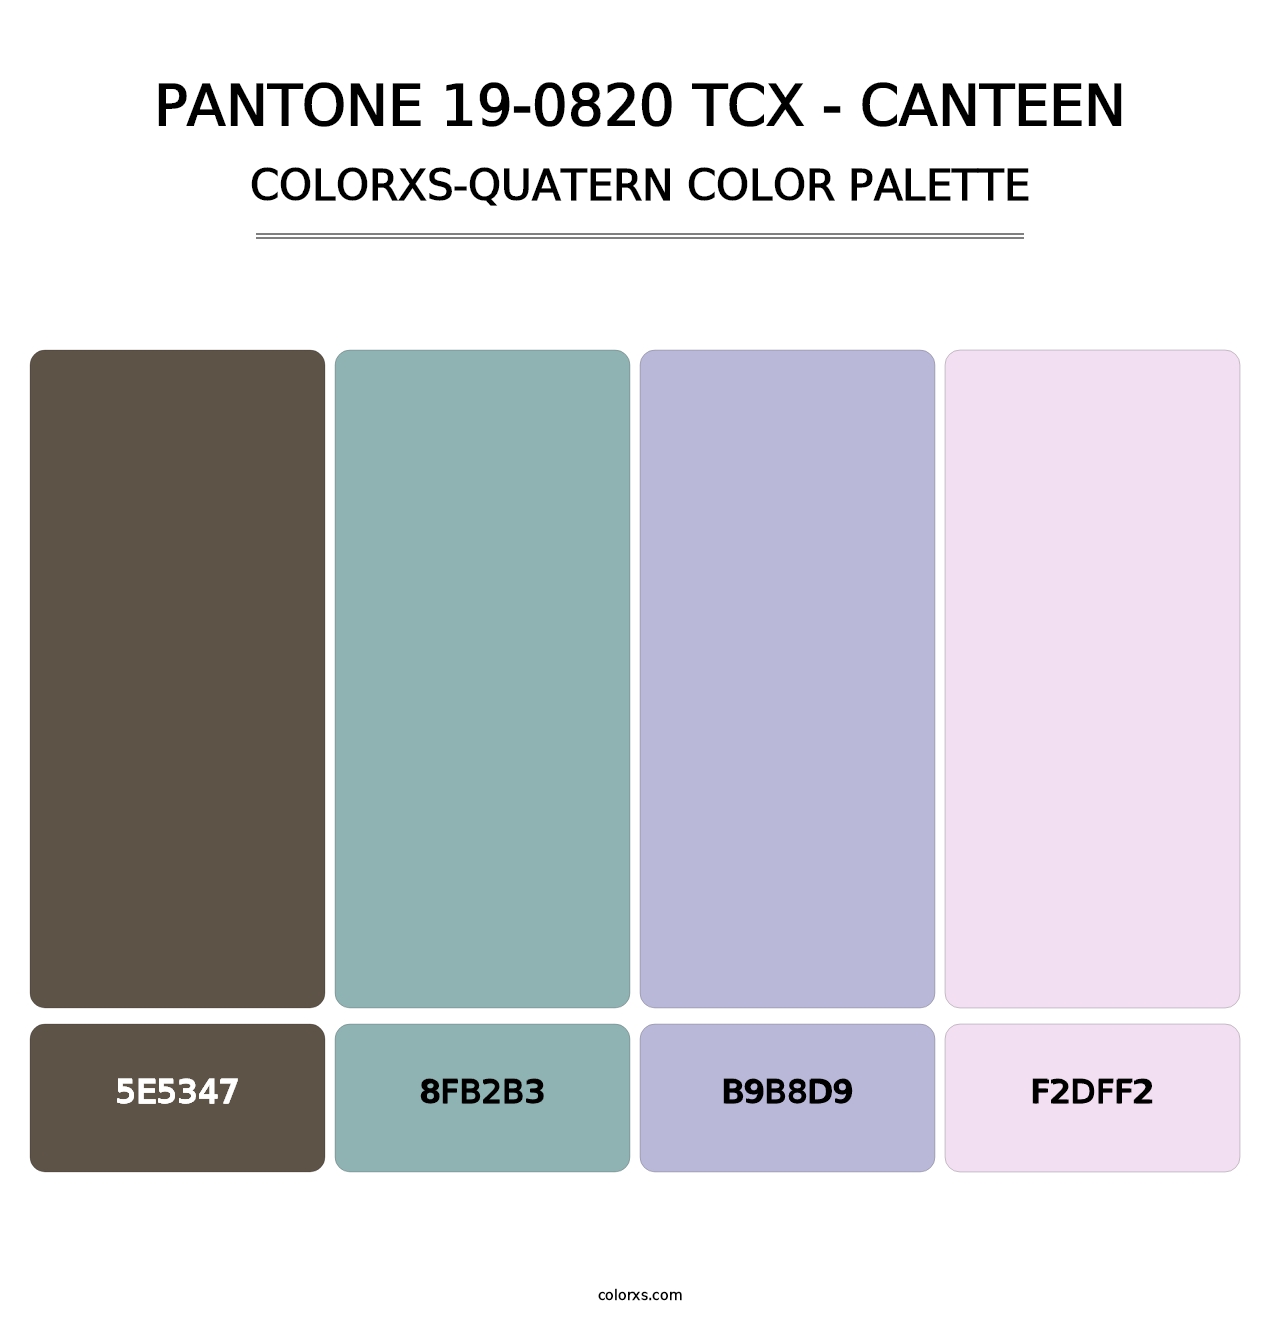 PANTONE 19-0820 TCX - Canteen - Colorxs Quatern Palette